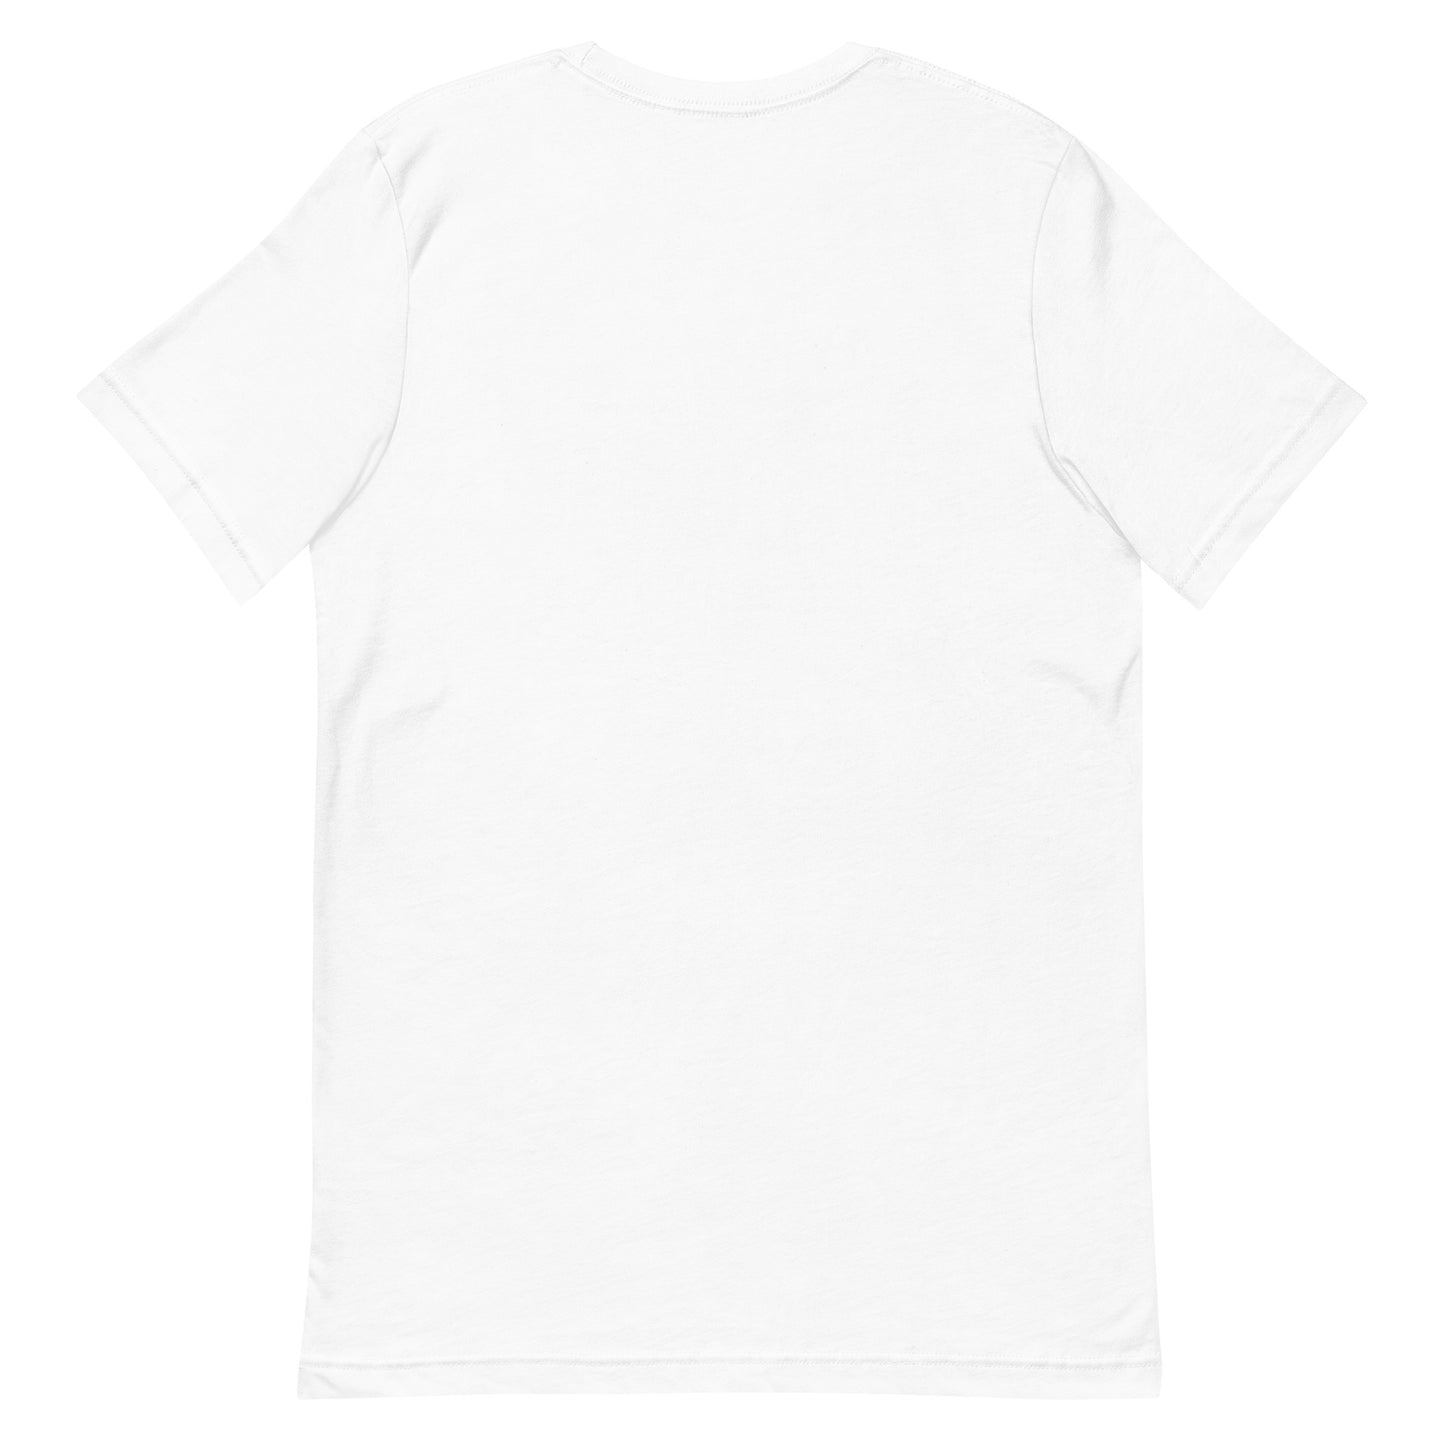 Unisex t-shirt "58 GYAKU NO UKIHASHI"White